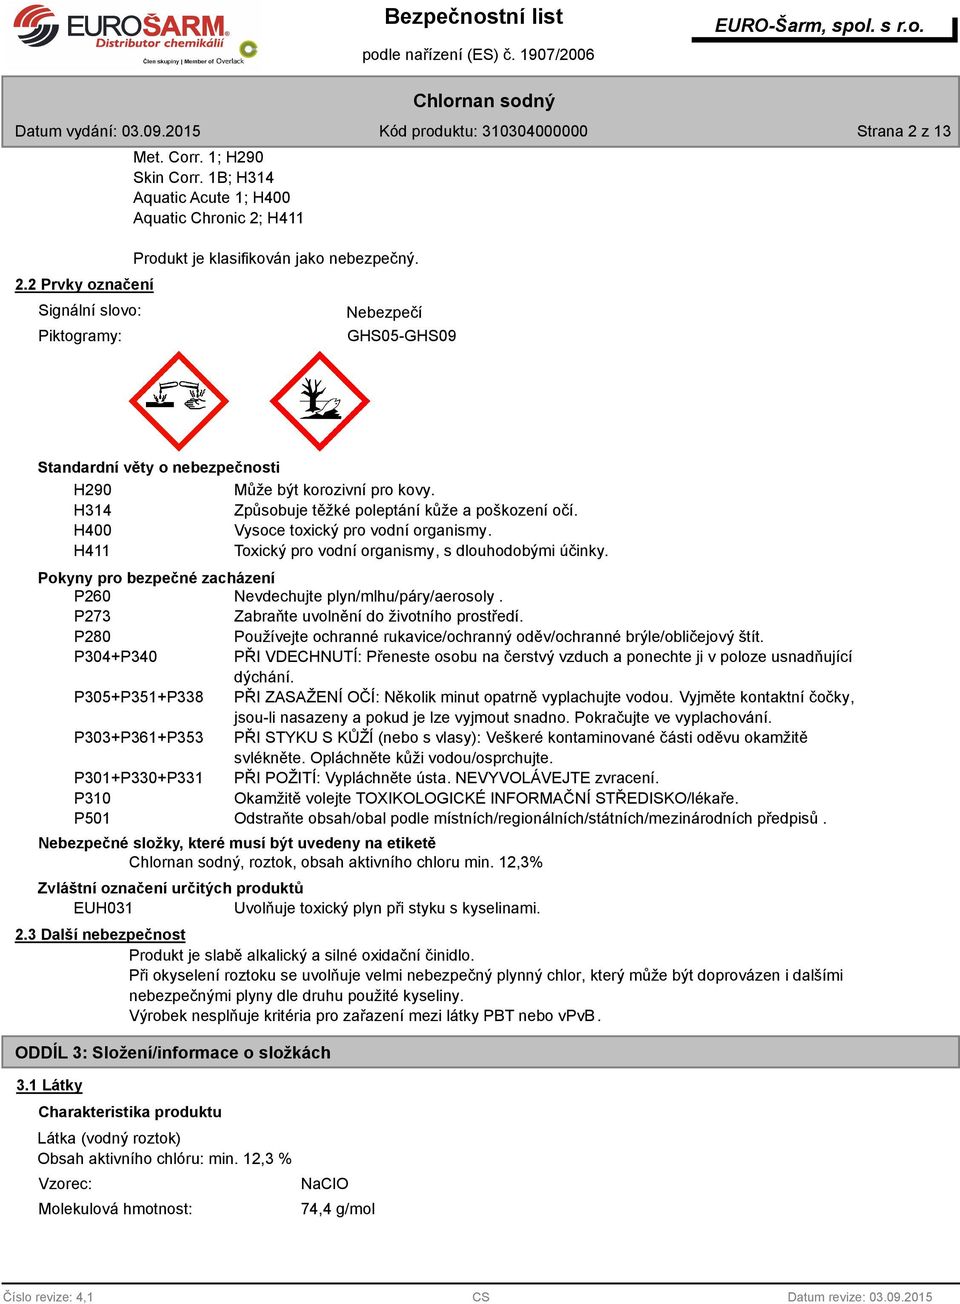 H411 Toxický pro vodní organismy, s dlouhodobými účinky. Pokyny pro bezpečné zacházení P260 Nevdechujte plyn/mlhu/páry/aerosoly. P273 Zabraňte uvolnění do životního prostředí.